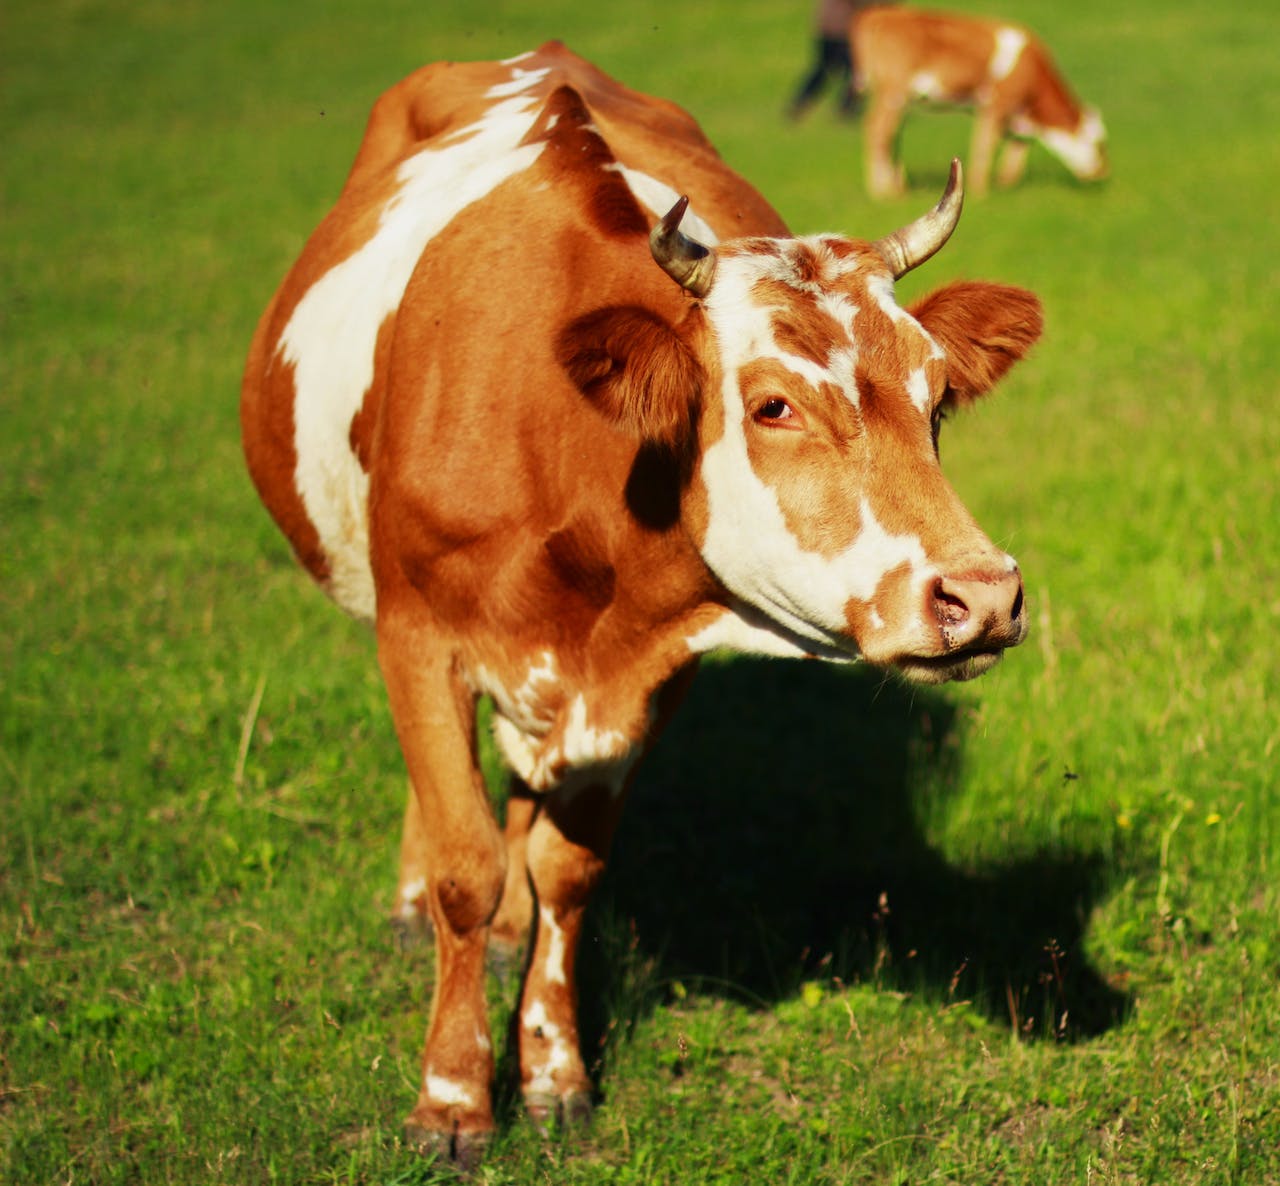 La vaca es considerada ganado. Fotografía de Pixabay.